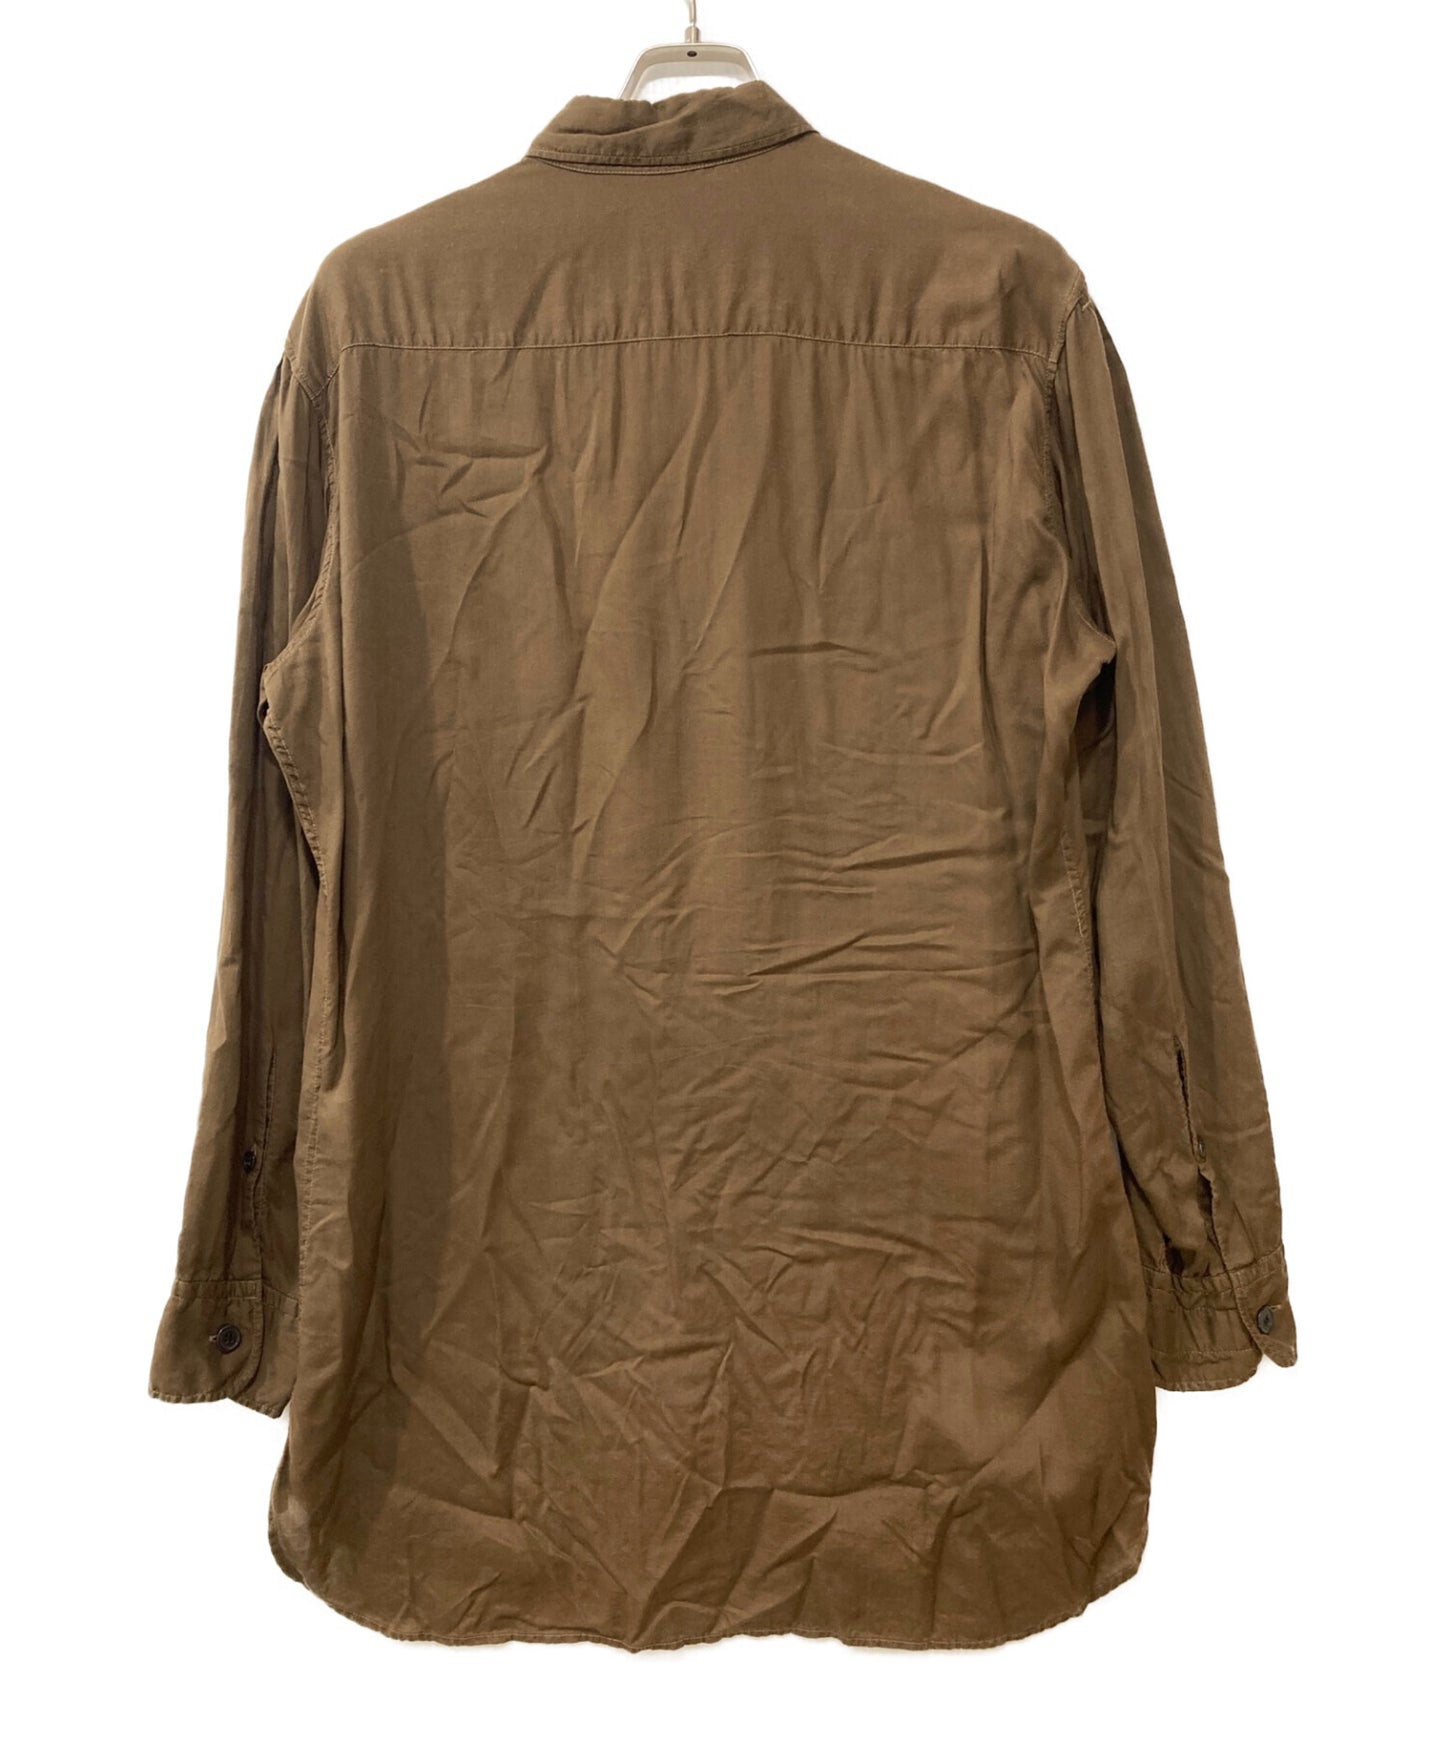 Yohji Yamamoto Pour Homme Product 3件衣领衬衫HX-B06-200